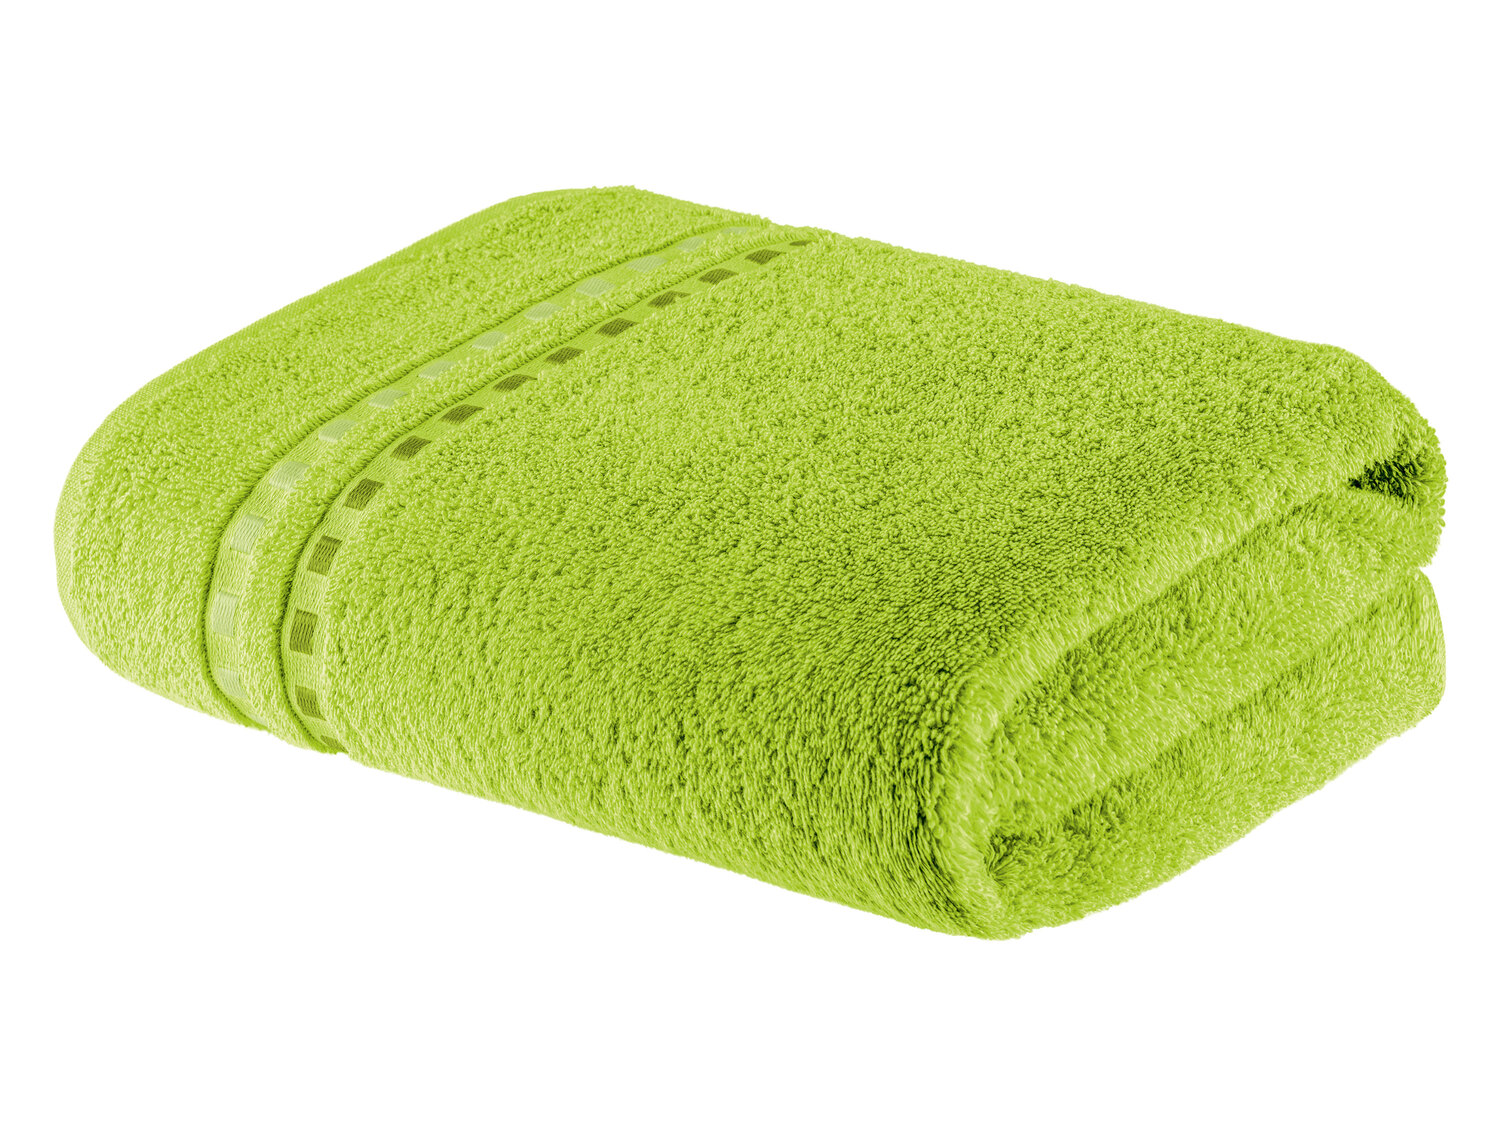 Ręcznik 70 x 140 cm , cena 21,99 PLN 
- 450 g/m2
- 100% bawełny
- miękki i ...